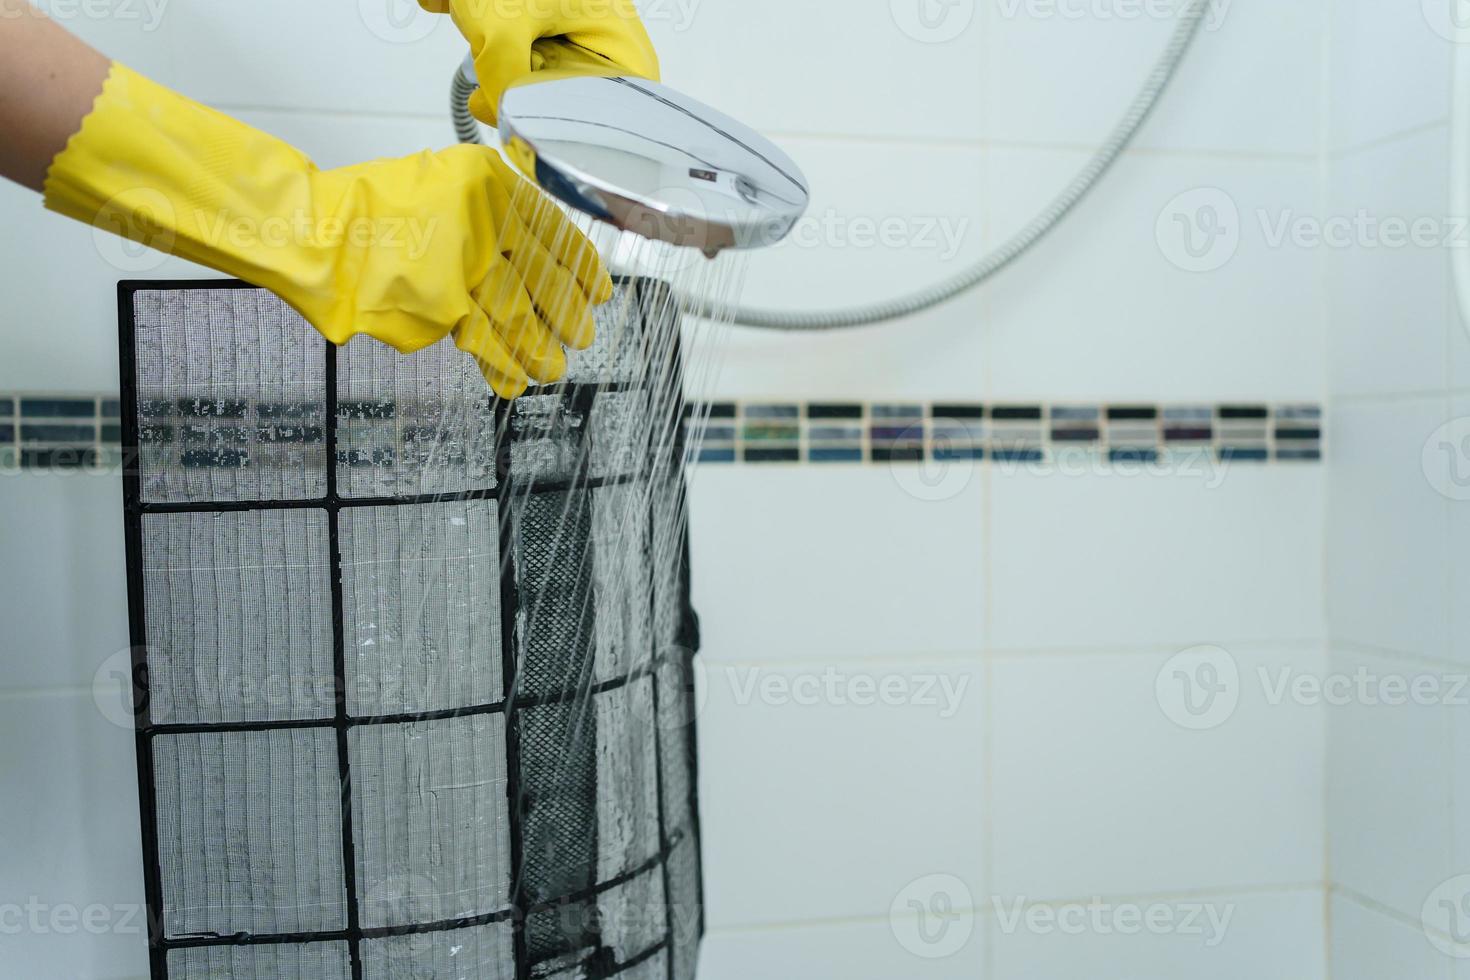 mulher asiática limpando um filtro de ar condicionado sujo e empoeirado em sua casa. dona de casa removendo um filtro de ar condicionado empoeirado. foto